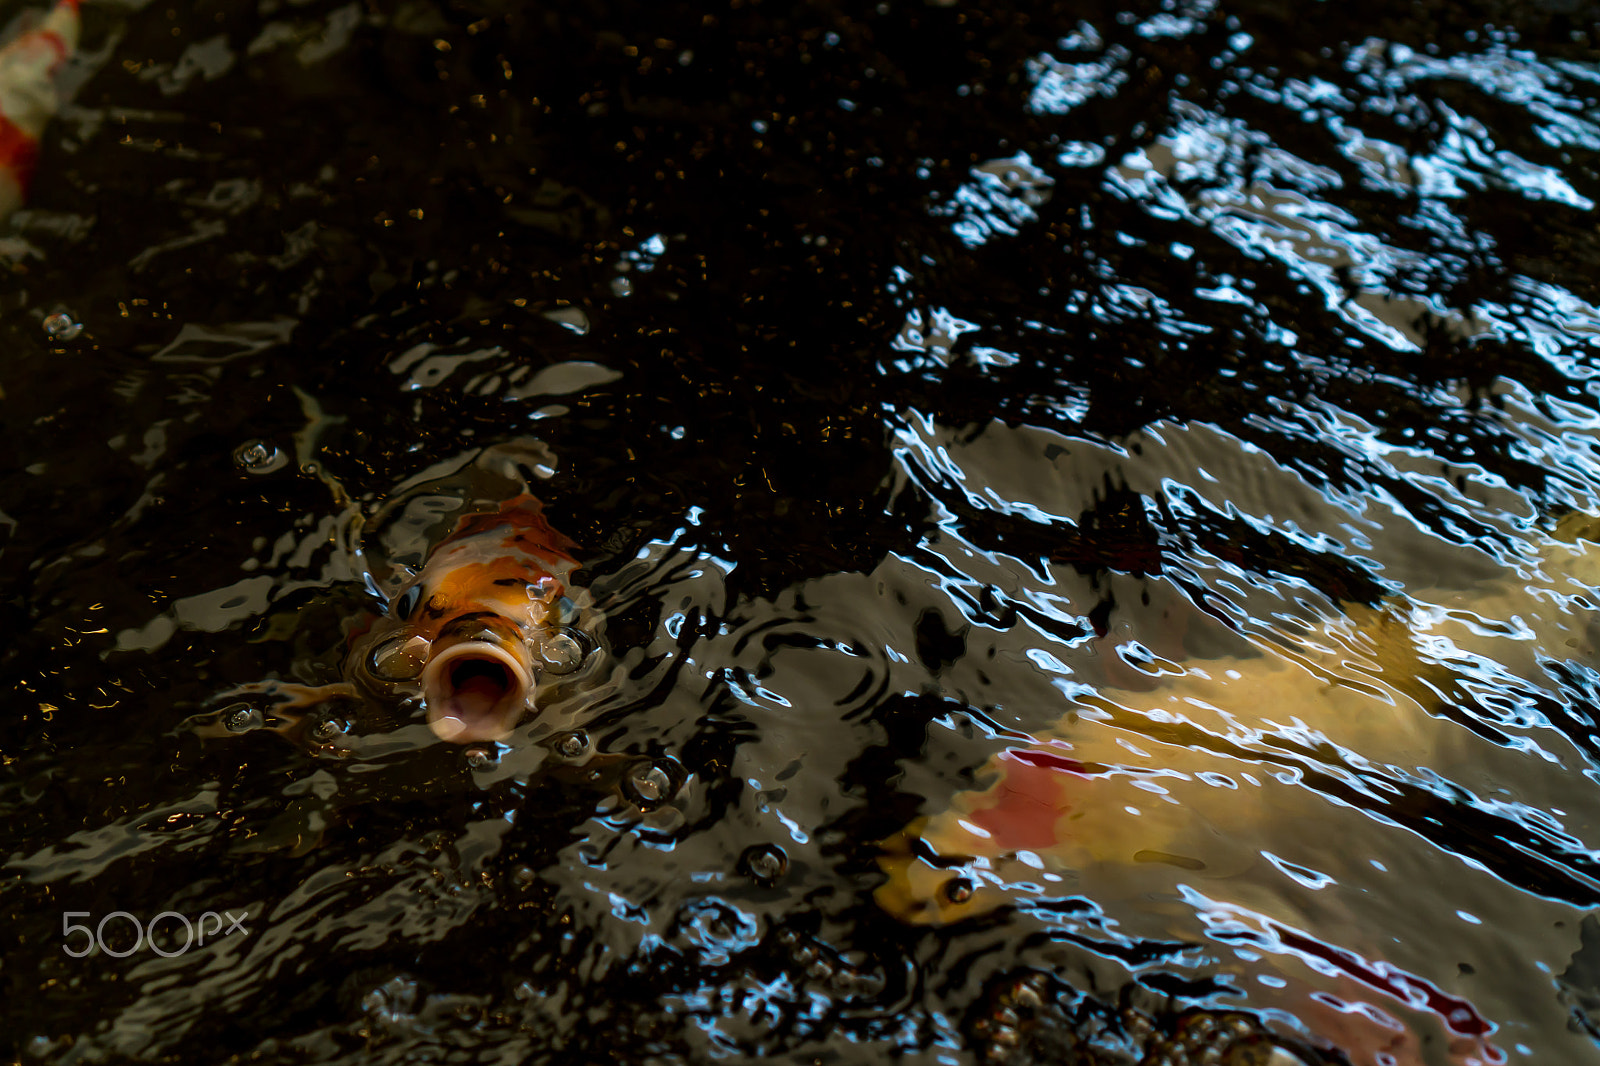 Sony a6300 sample photo. Carp fish photography